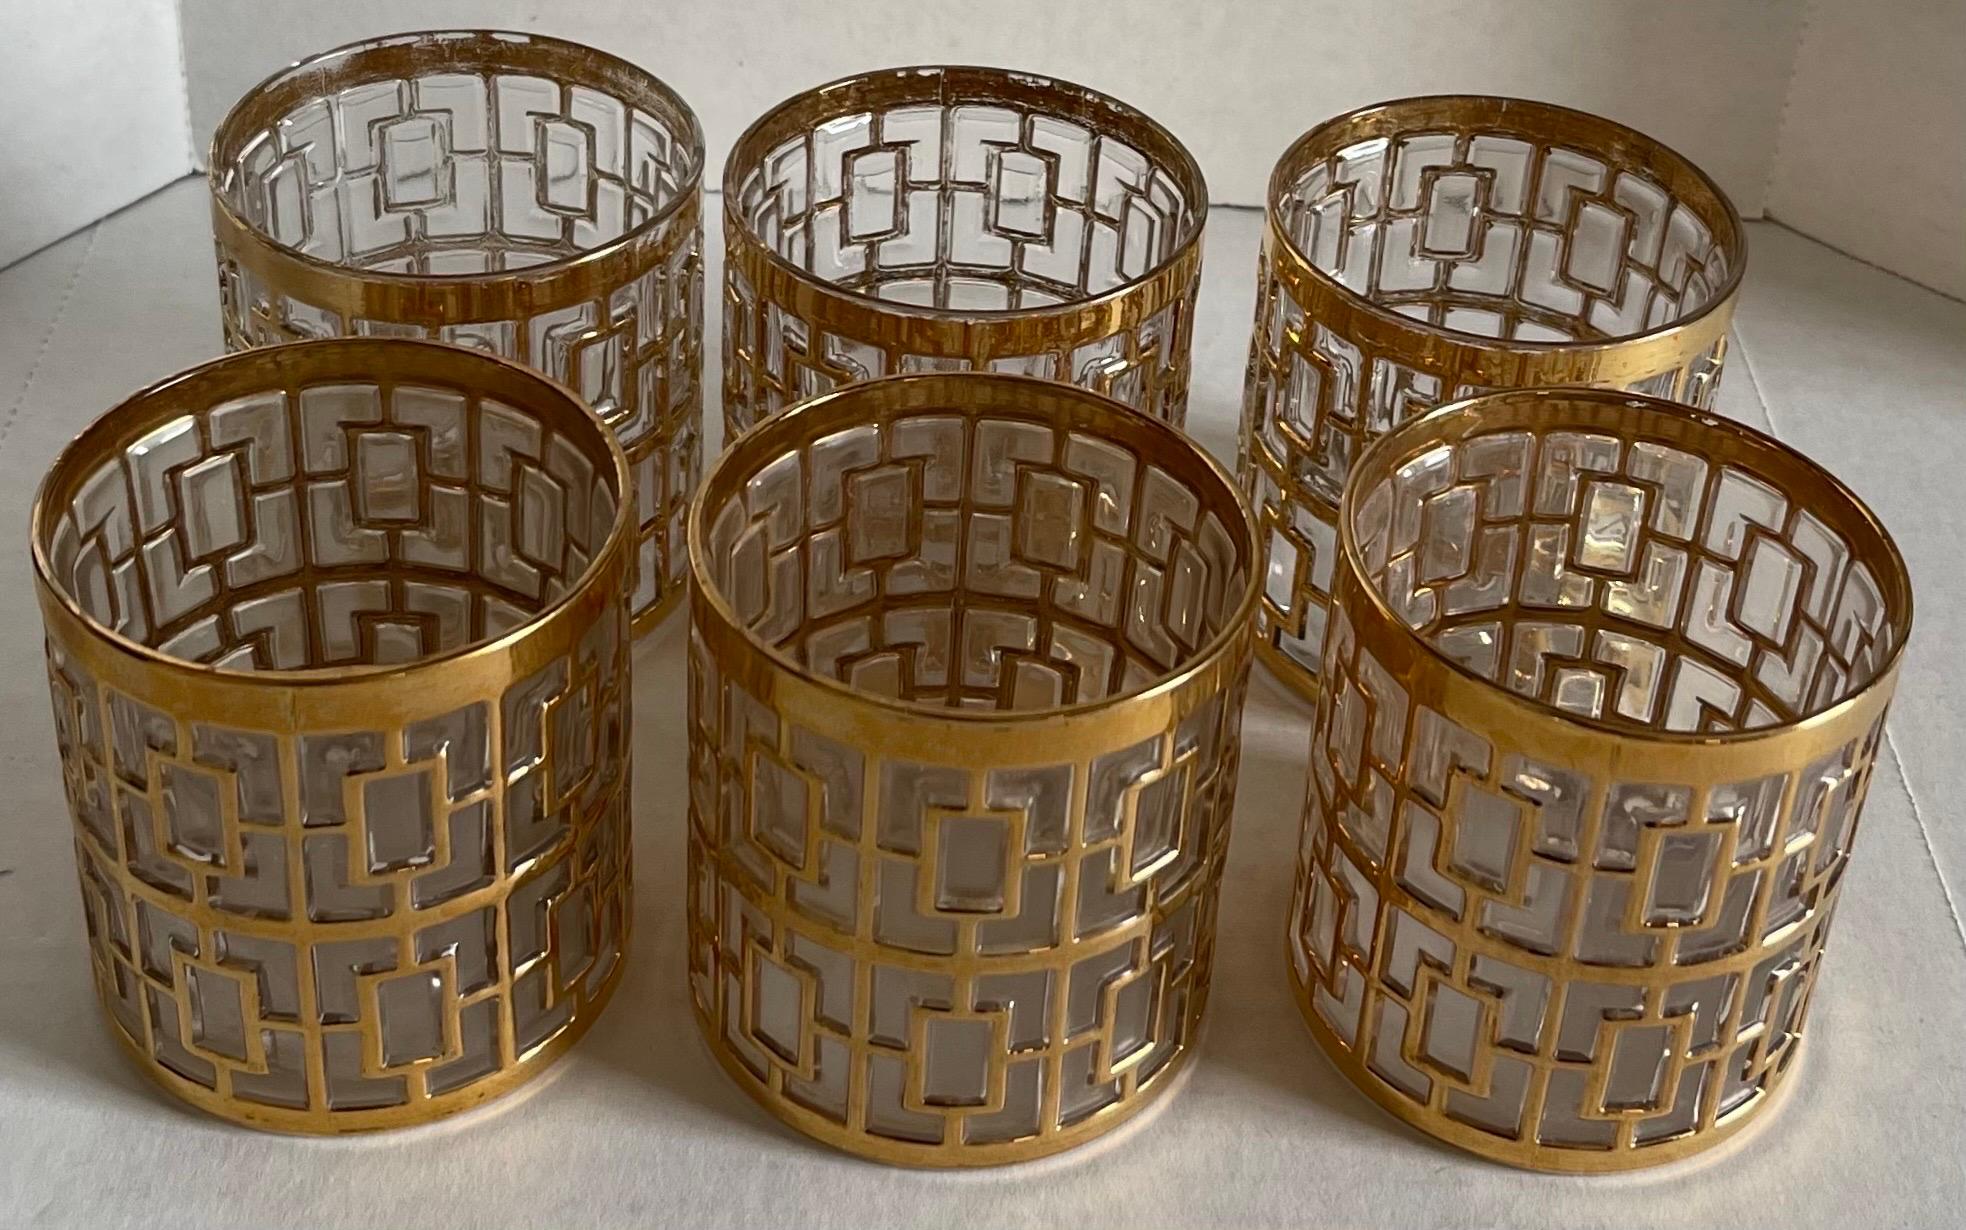 Ensemble de 6 petits verres à saki Imperial Shoji. Design/One géométrique en relief avec or 22 carats. Chaque verre mesure 2,75